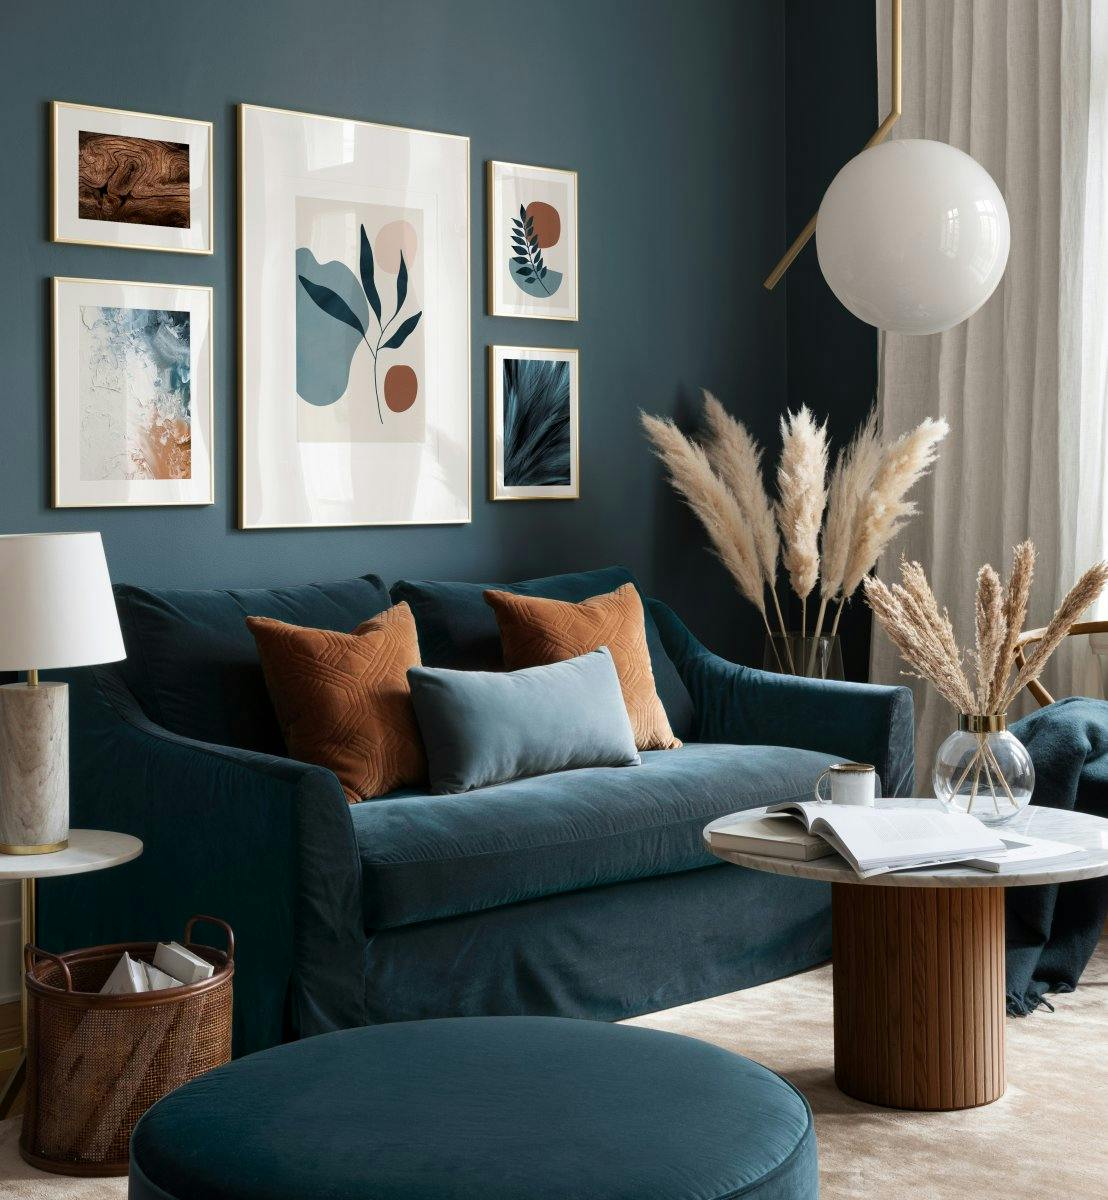 Abstrakte grafische Poster und blaugrüne Kunstbilder im modernen Wohnzimmer